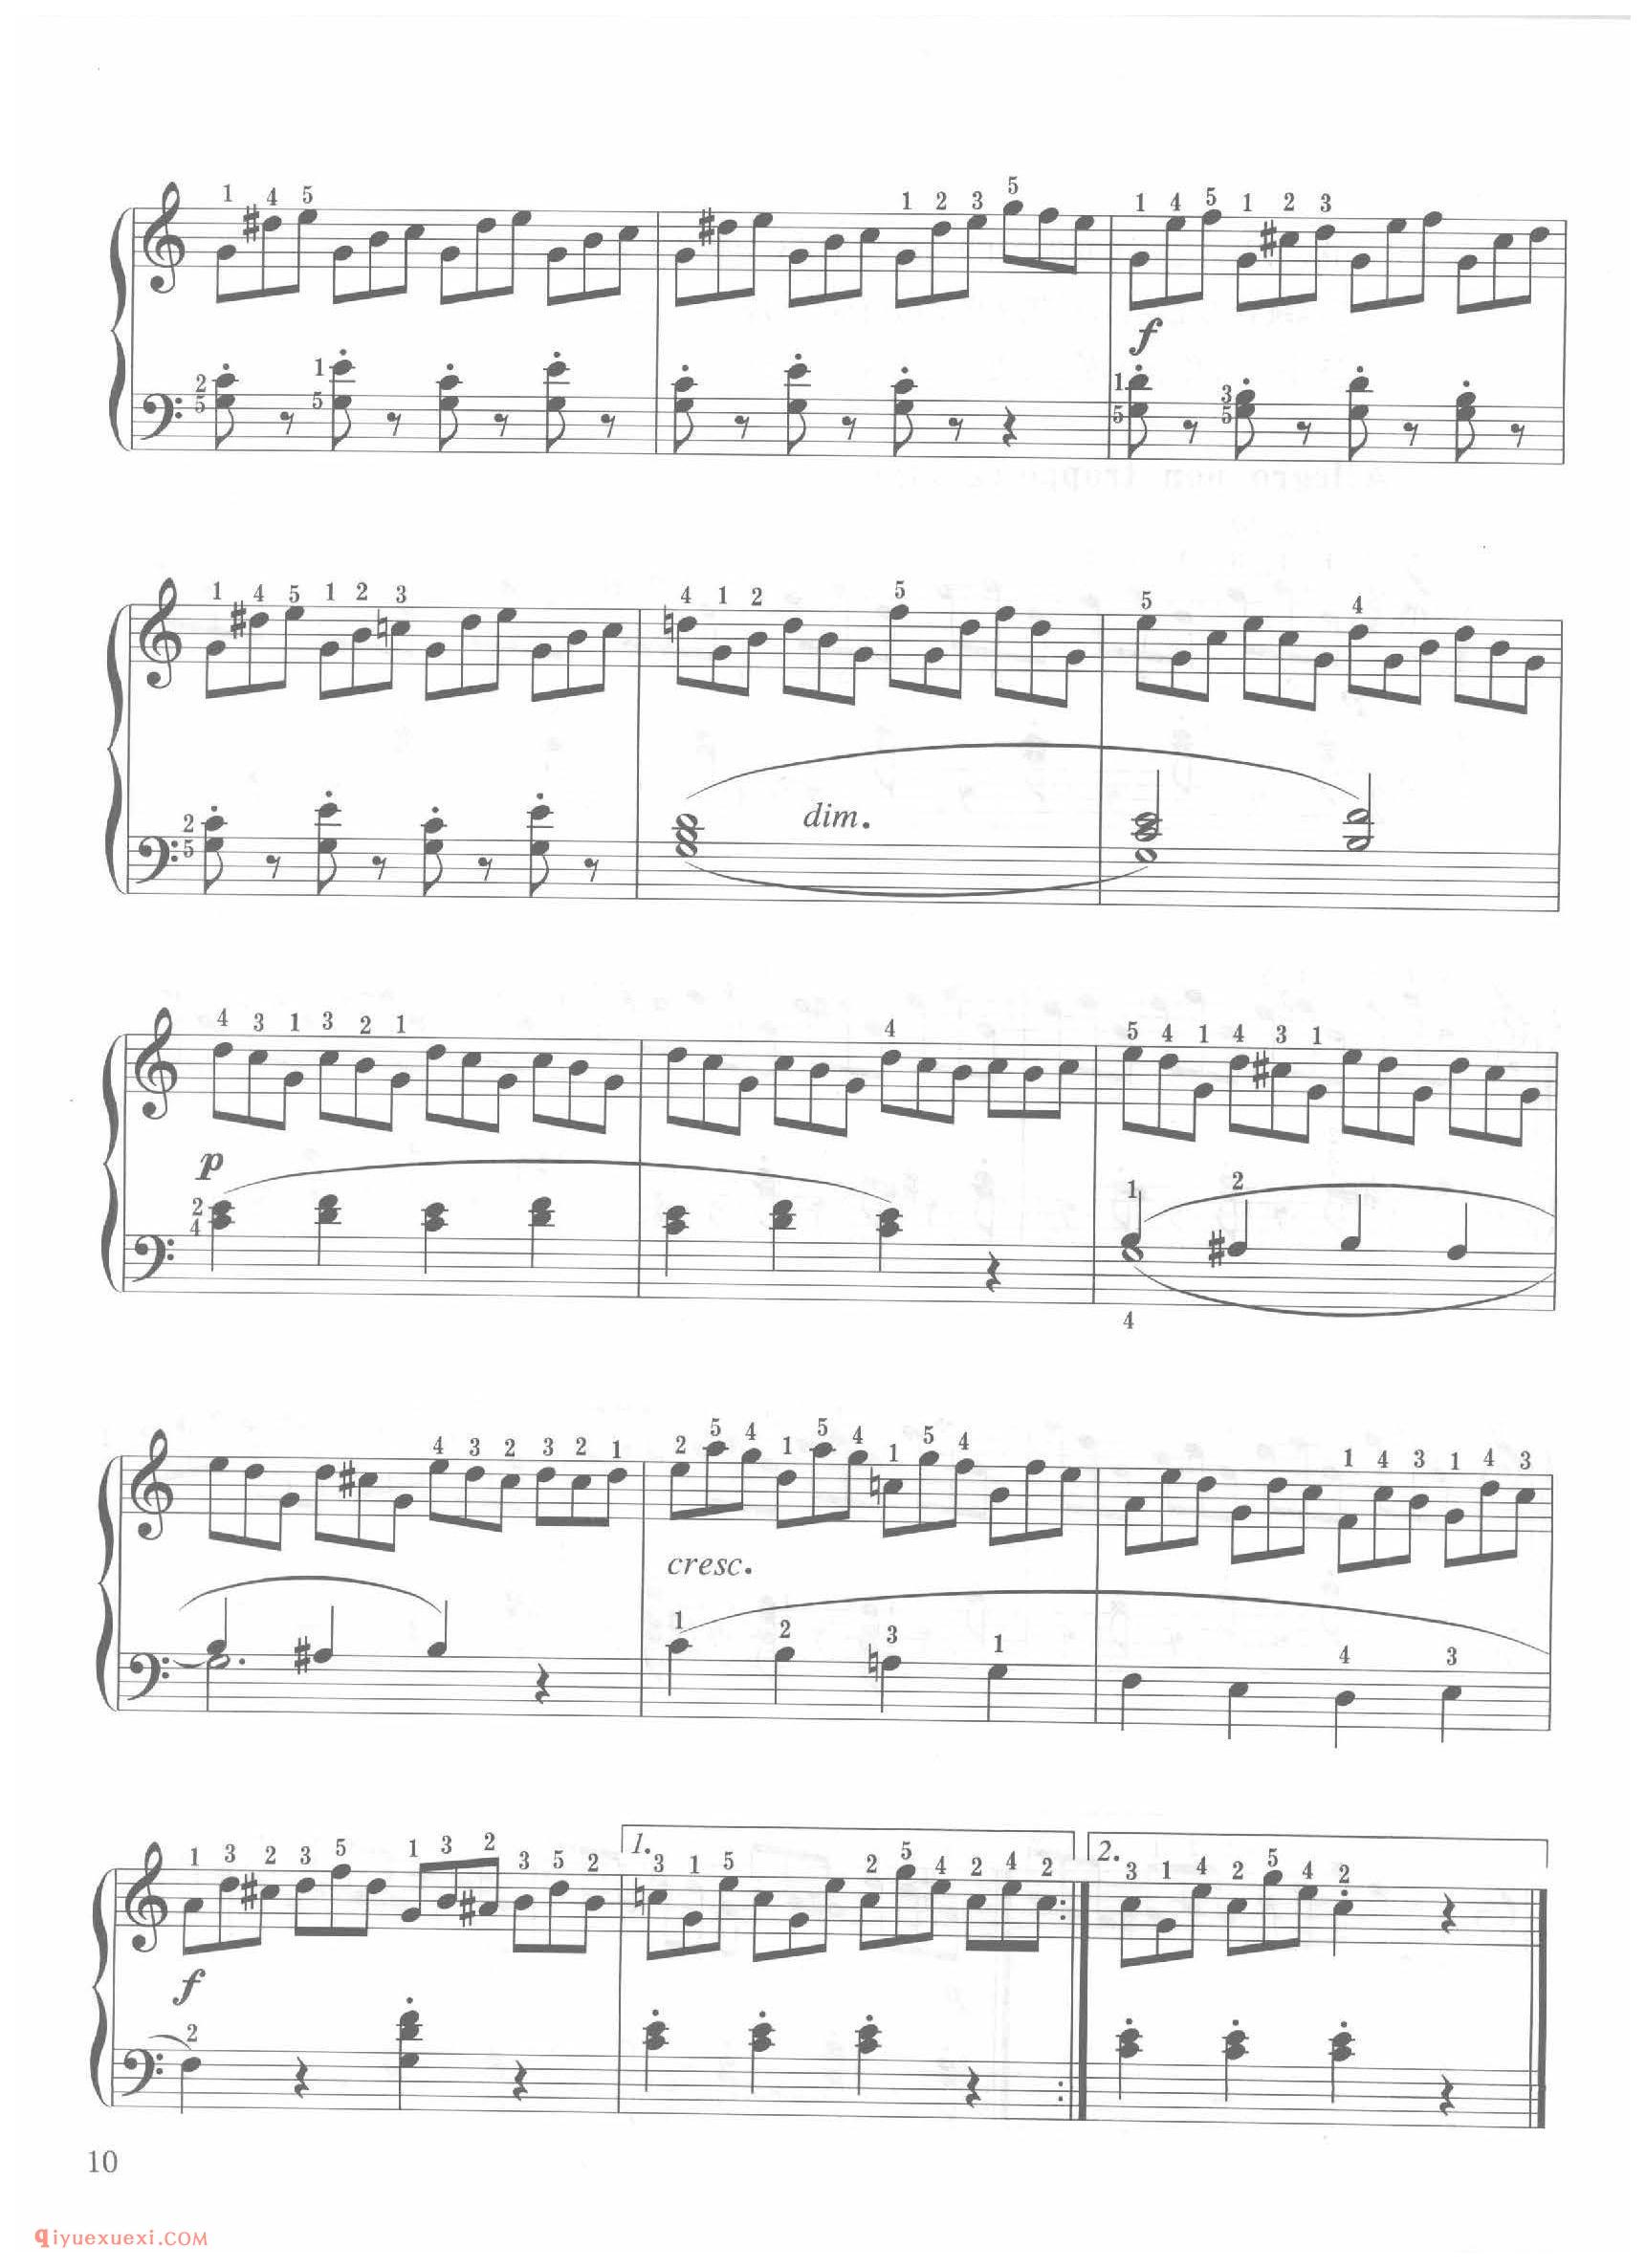 第3条 C大调不过分的快板（Allegro non troppo）车尔尼钢琴作品849_常桦讲解 注释